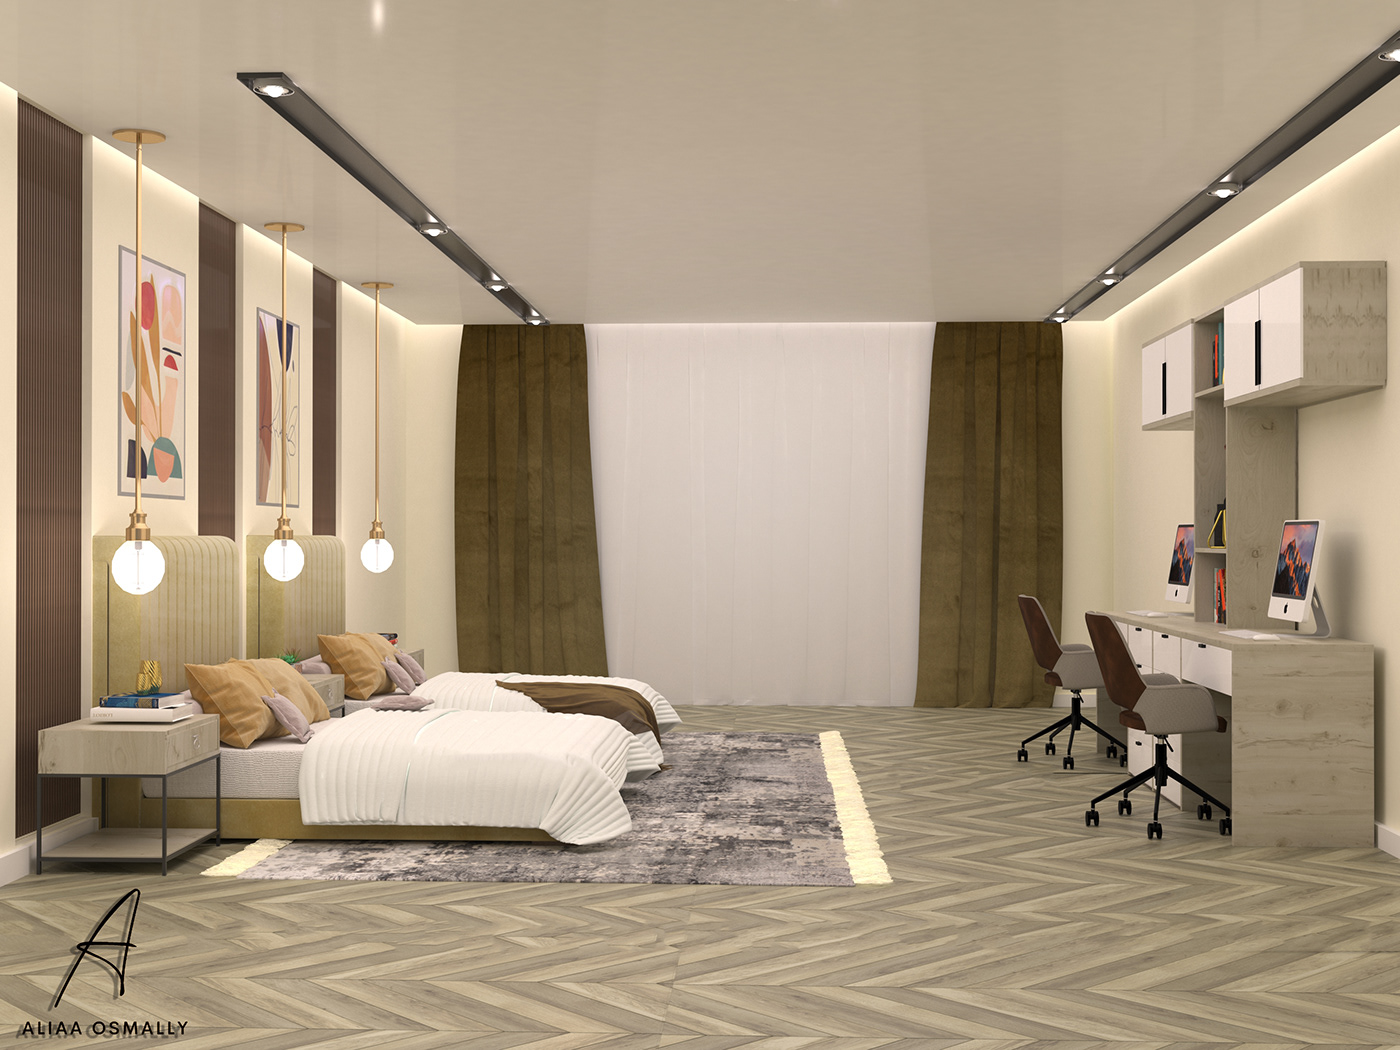 3dmax bedroom design double interior design 